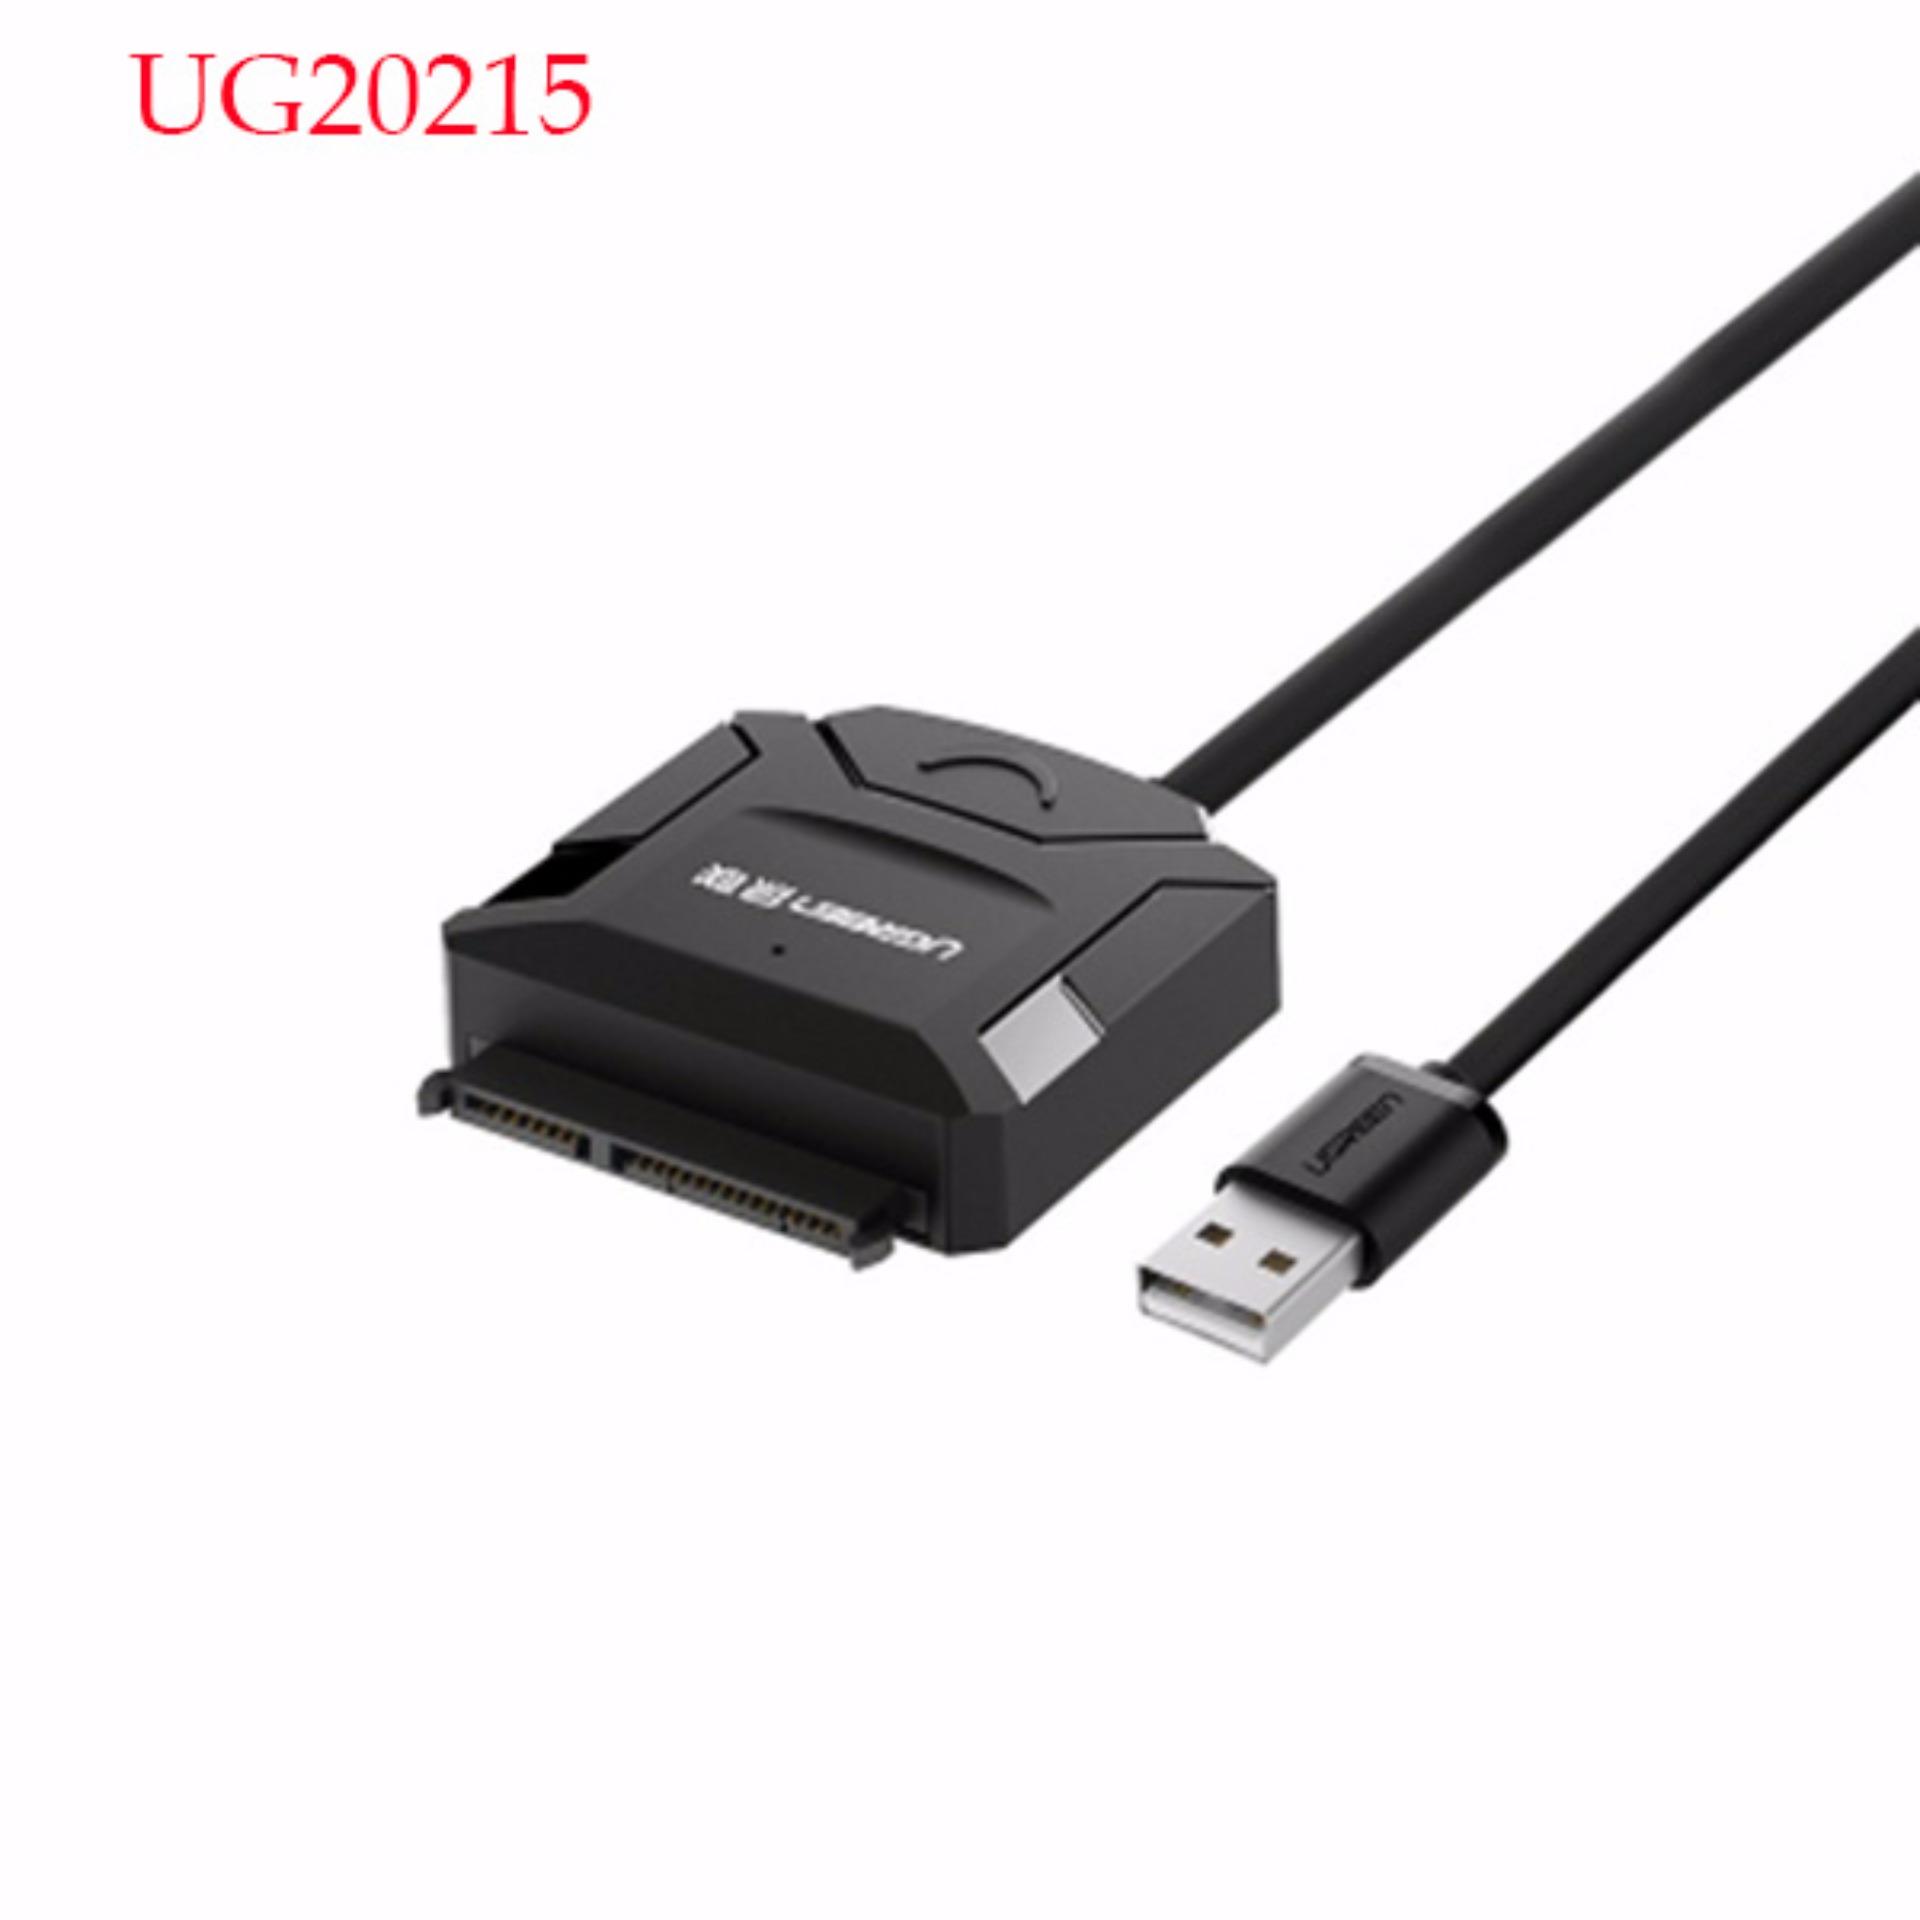 Cáp chuyển đổi USB 2.0 sang sata kết nối HDD qua cổng USB UG20215